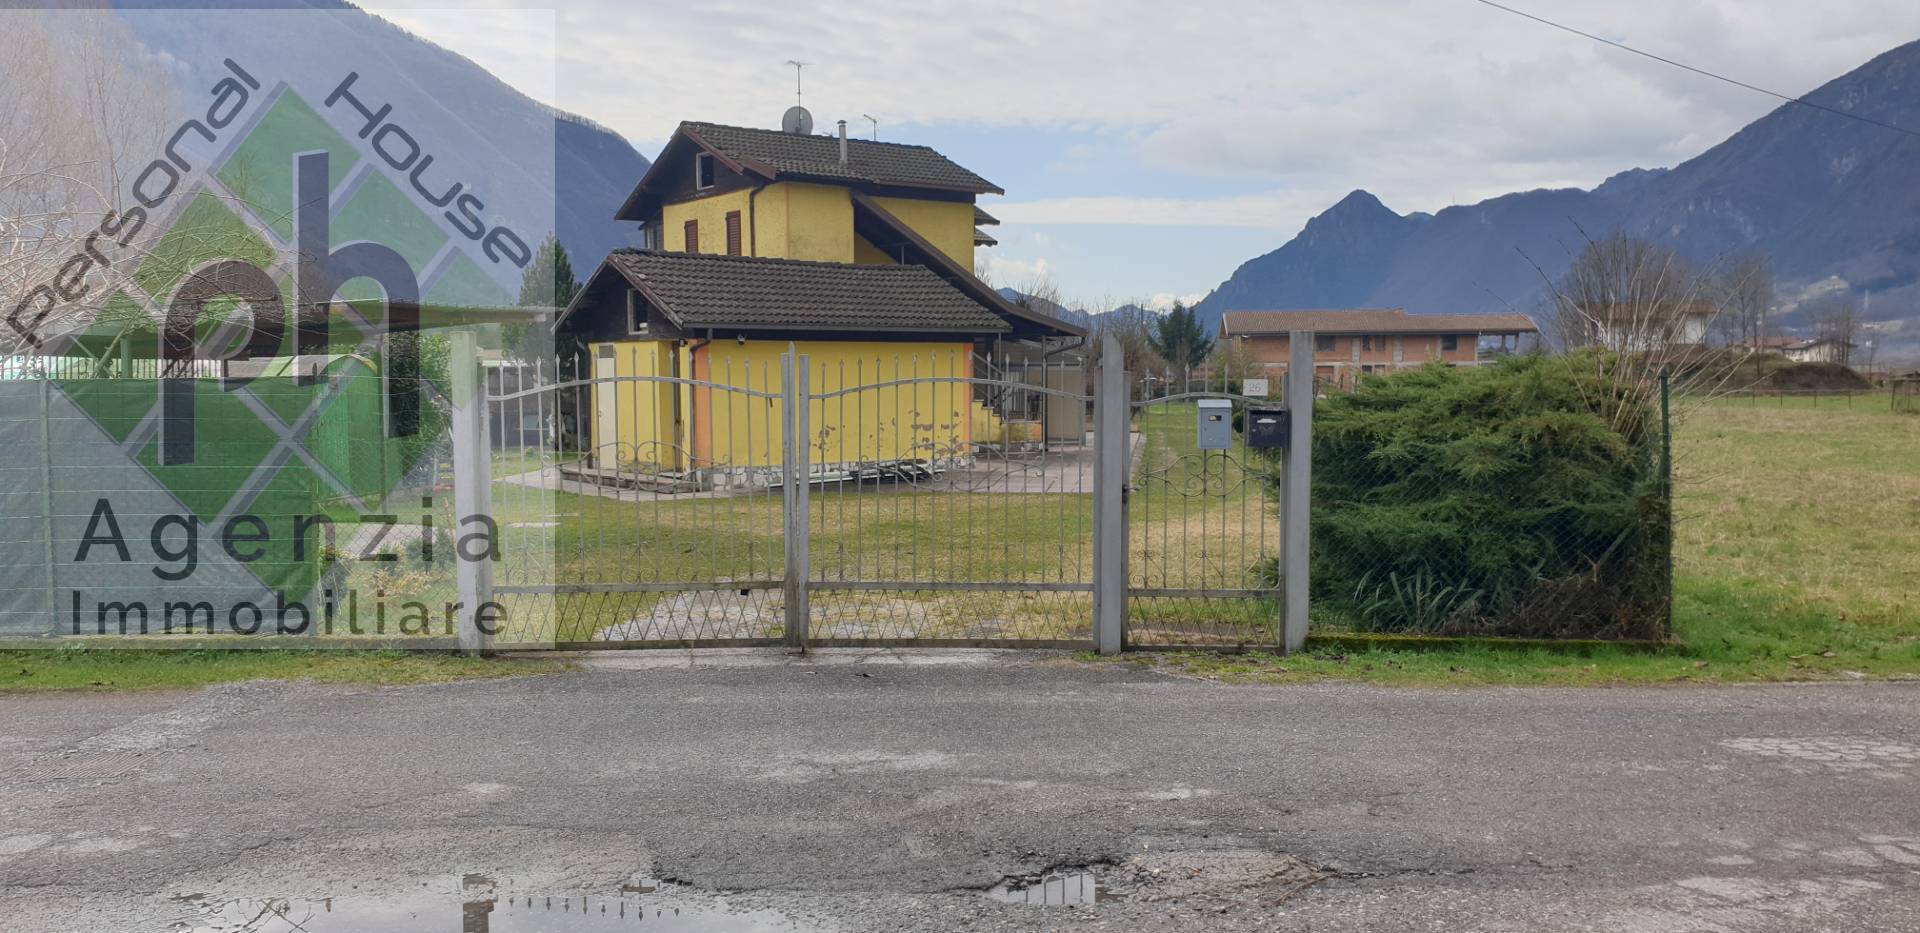 Villa a Schiera in vendita a Bagolino, 4 locali, zona Località: PonteCaffaro, prezzo € 55.000 | PortaleAgenzieImmobiliari.it